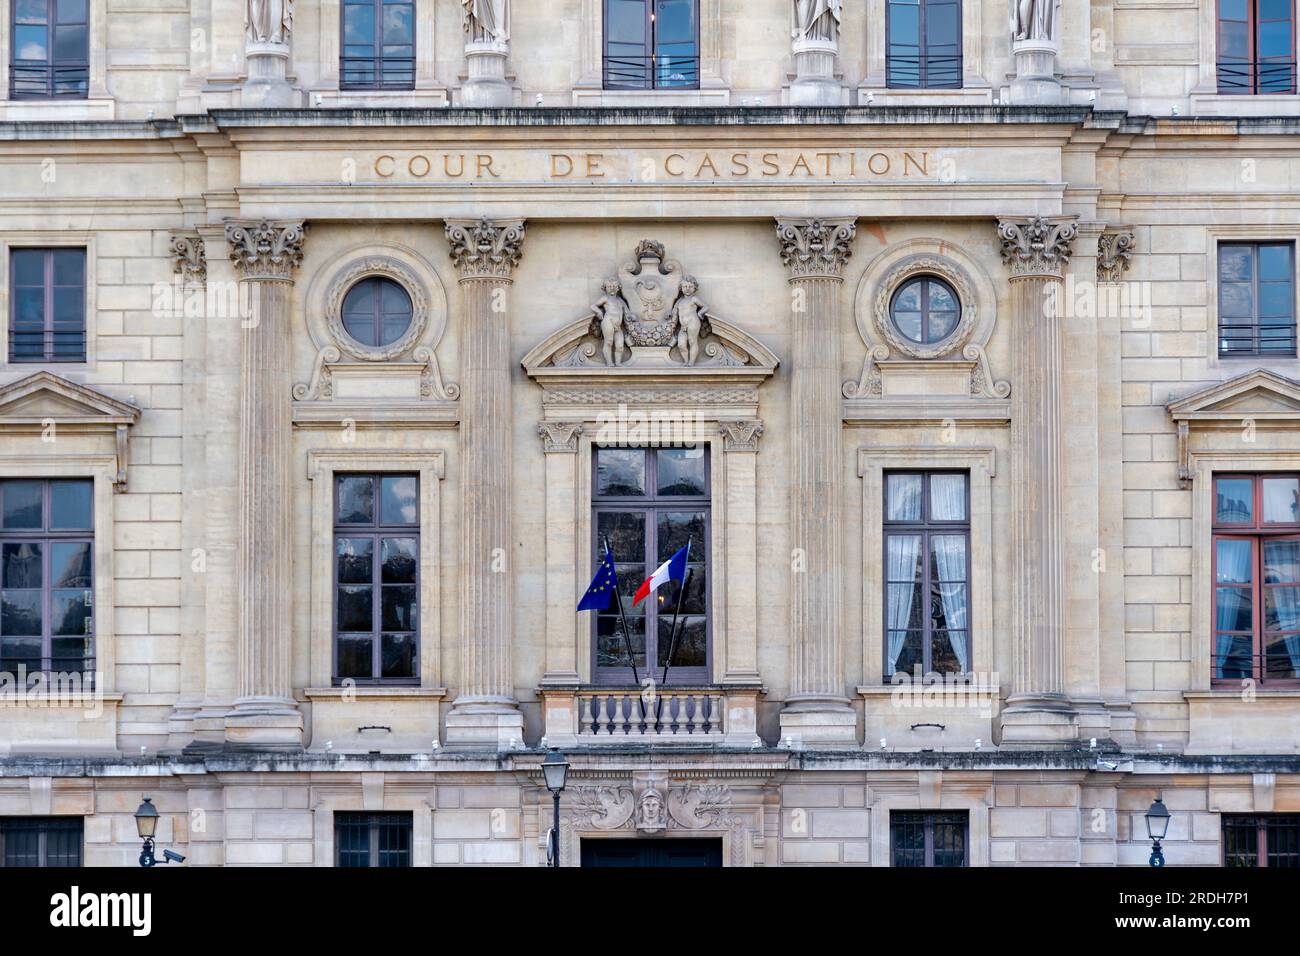 Détail de la façade du bâtiment abritant la Cour de Cassation, la plus haute juridiction du système judiciaire français Banque D'Images